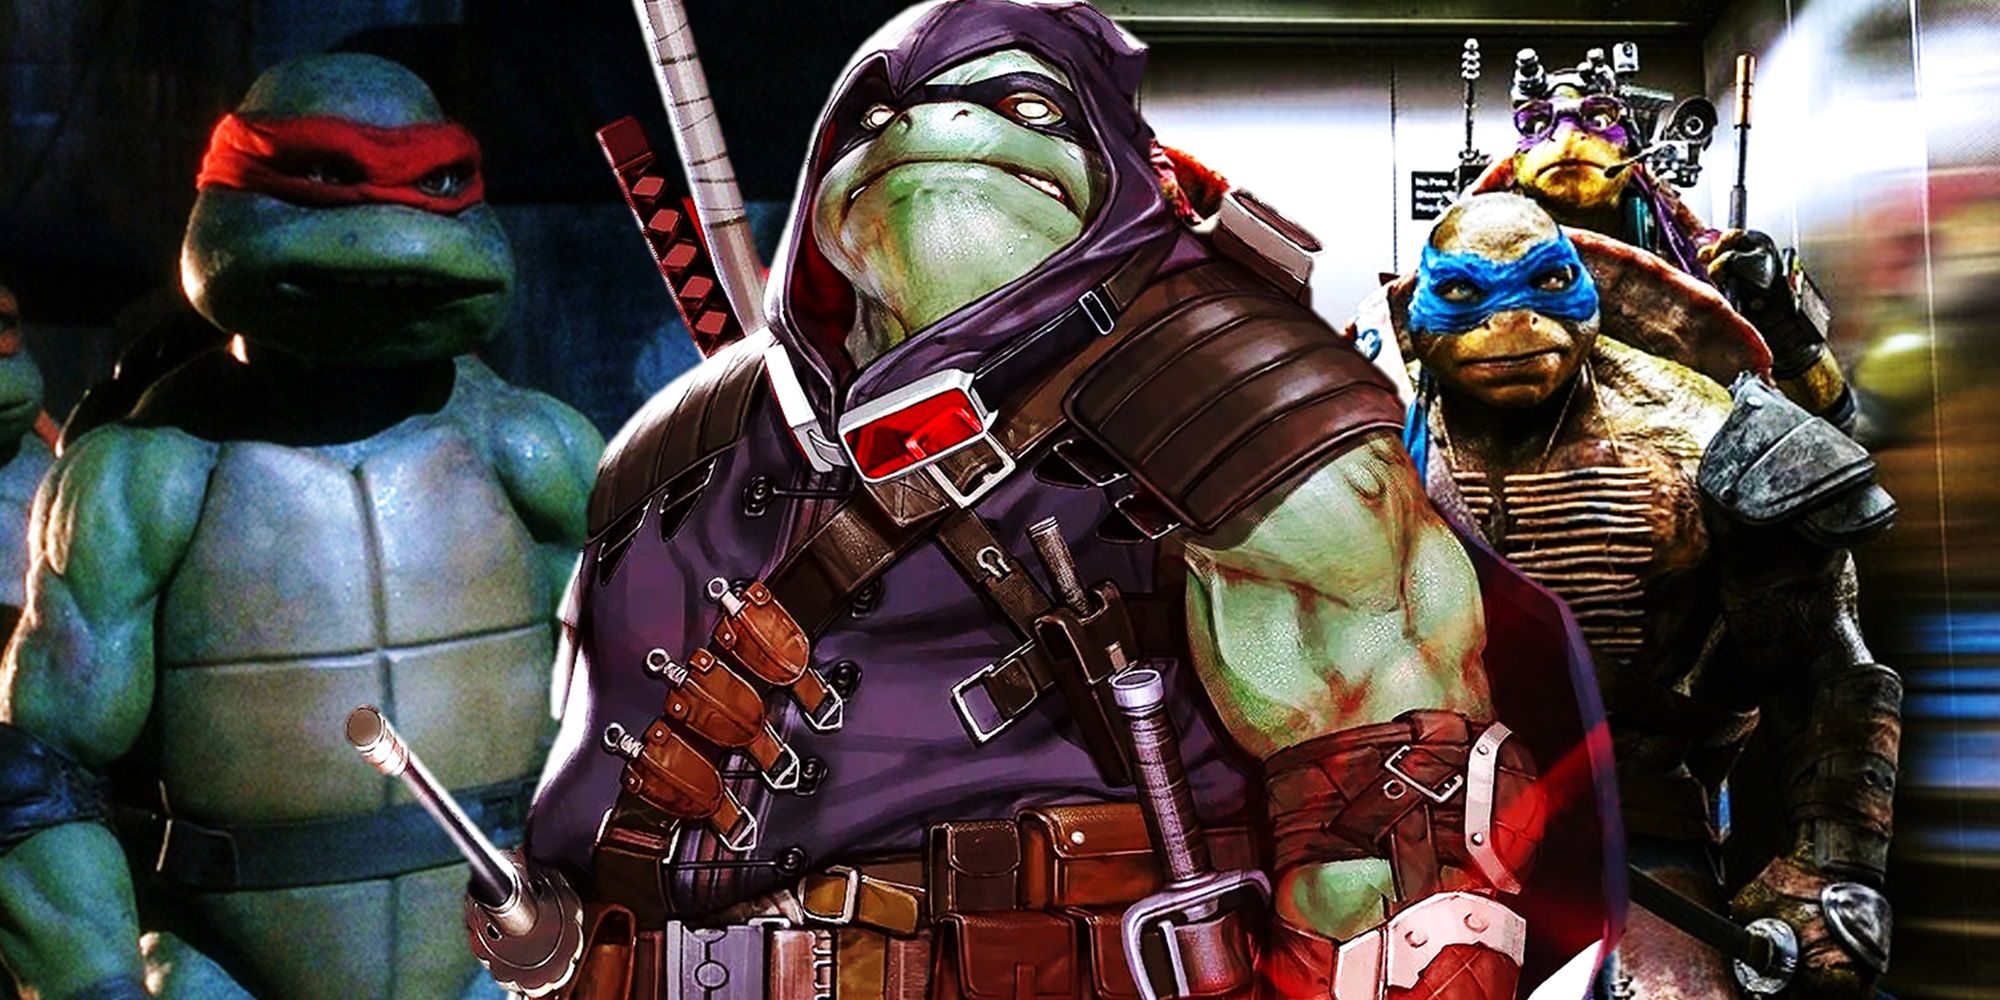 Collage of Raphael in Teenage Mutant Ninja Turtles 1990, Michelangelo in Teenage Mutant Ninja Turtles The Last Ronin, and Leonardo in Teenage Mutant Ninja Turtles 2014